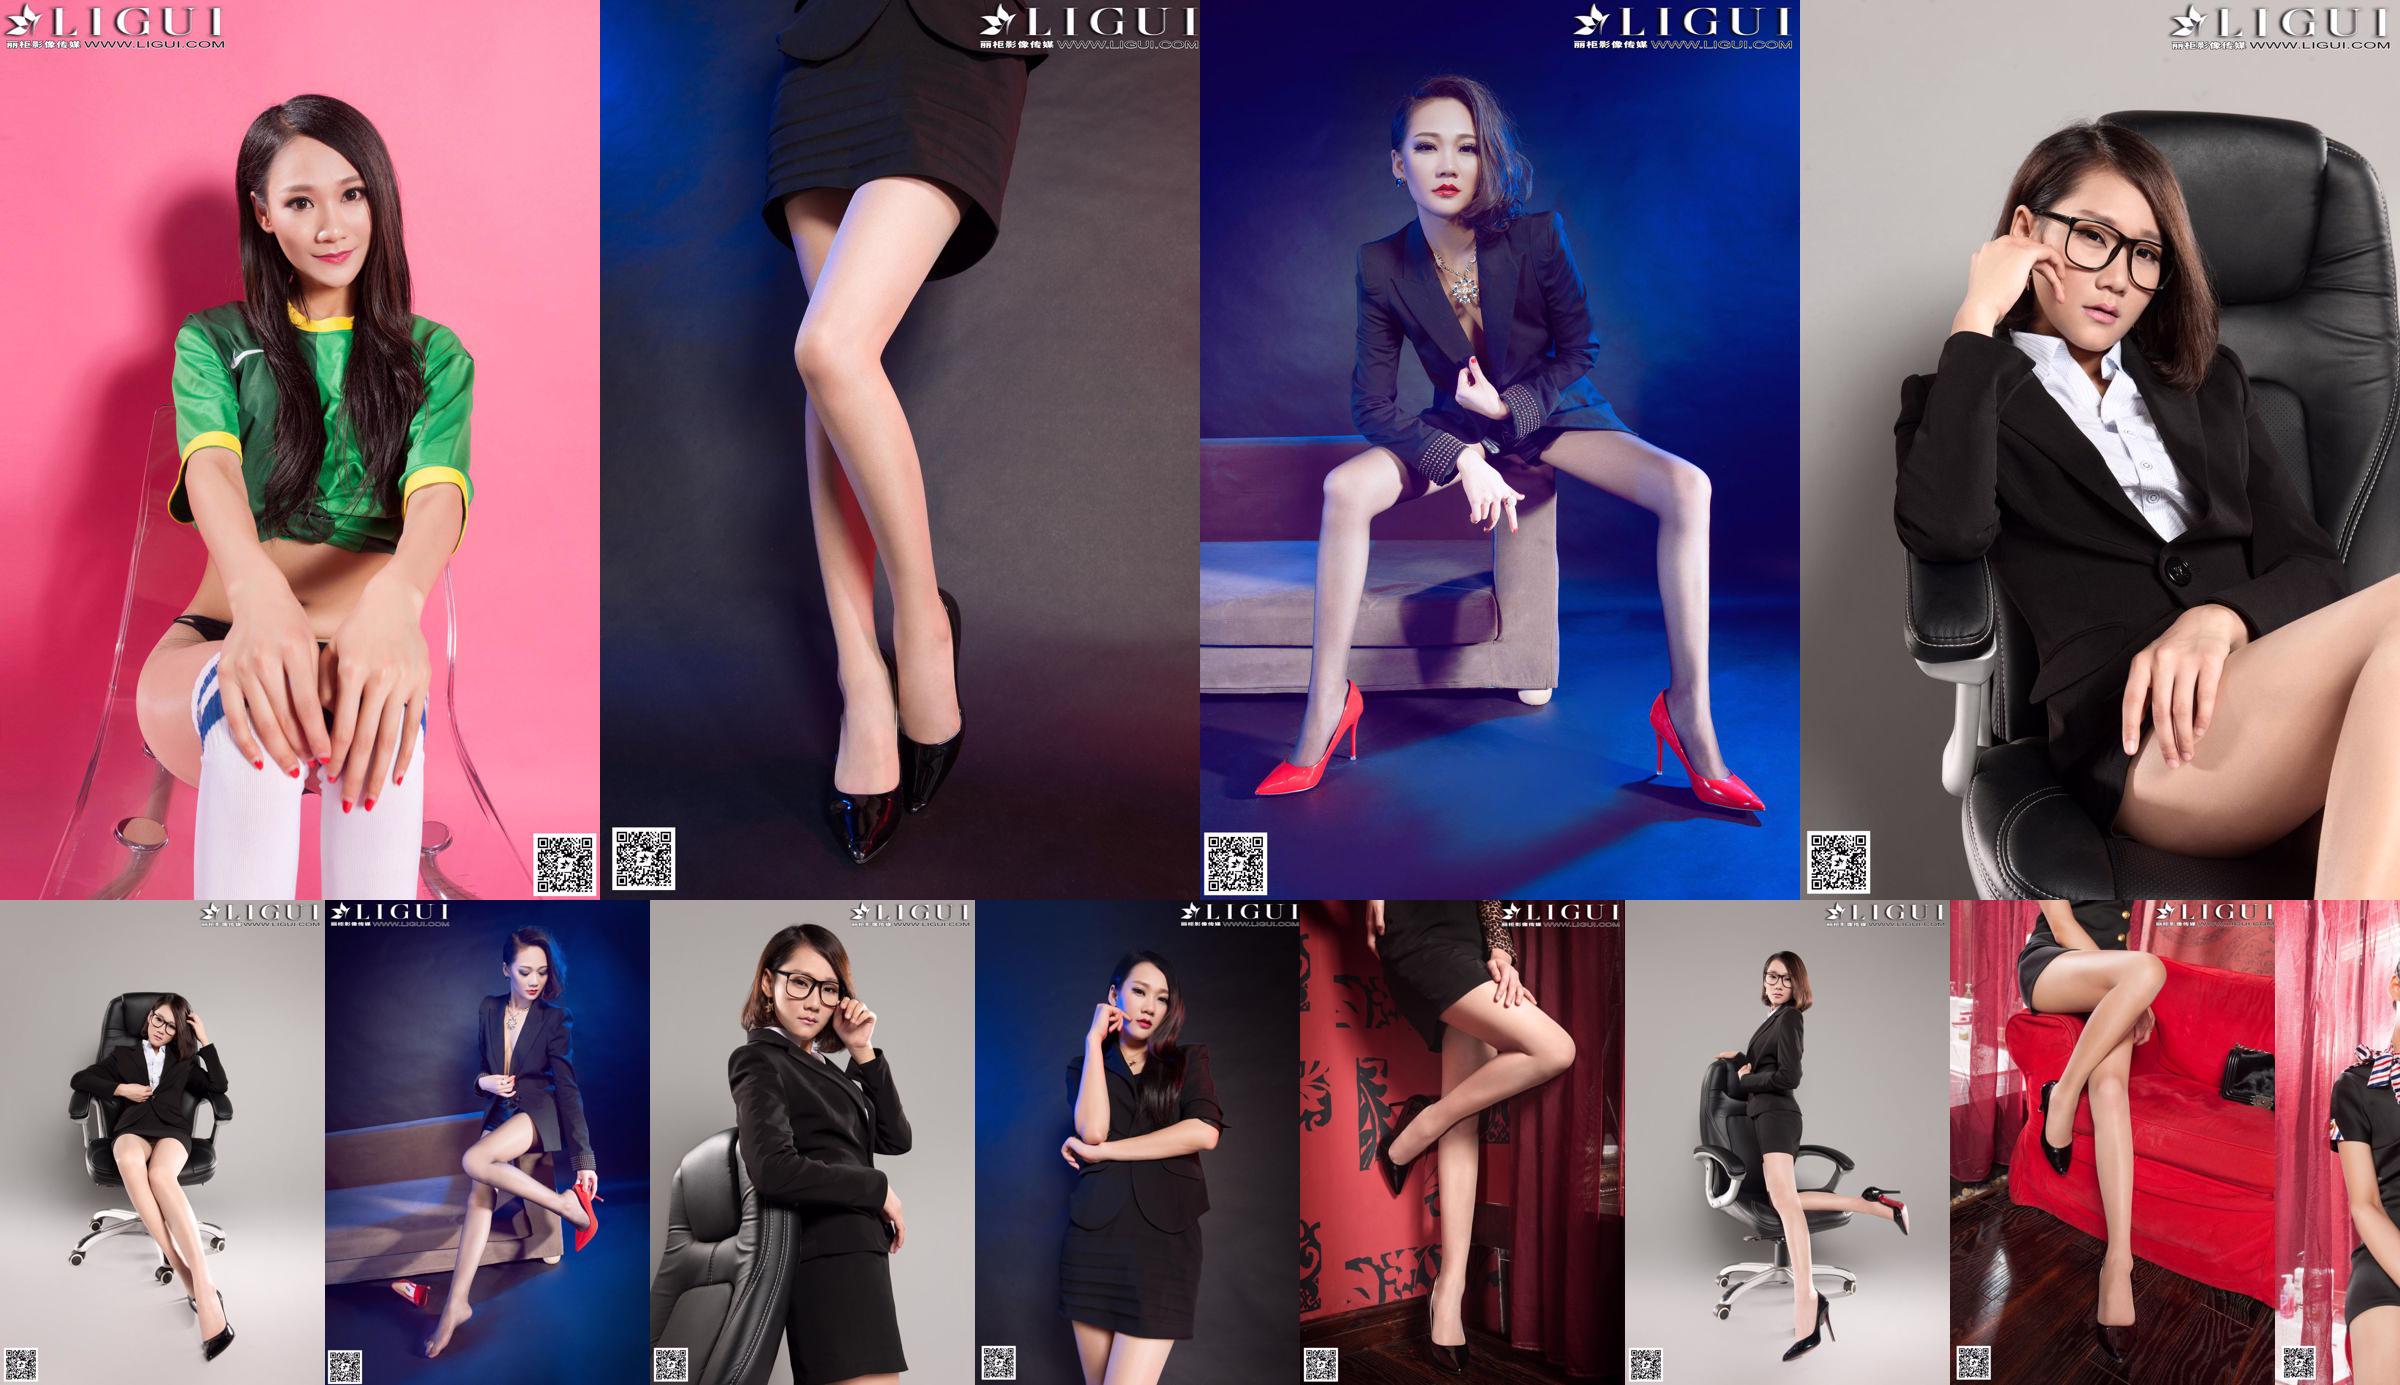 [丽 柜 LiGui] Model Mandys "Professional Wear High-Heels Silk Feet" - Sammlung wunderschöner Beine und Jadefußfotos No.c4b2f5 Seite 3